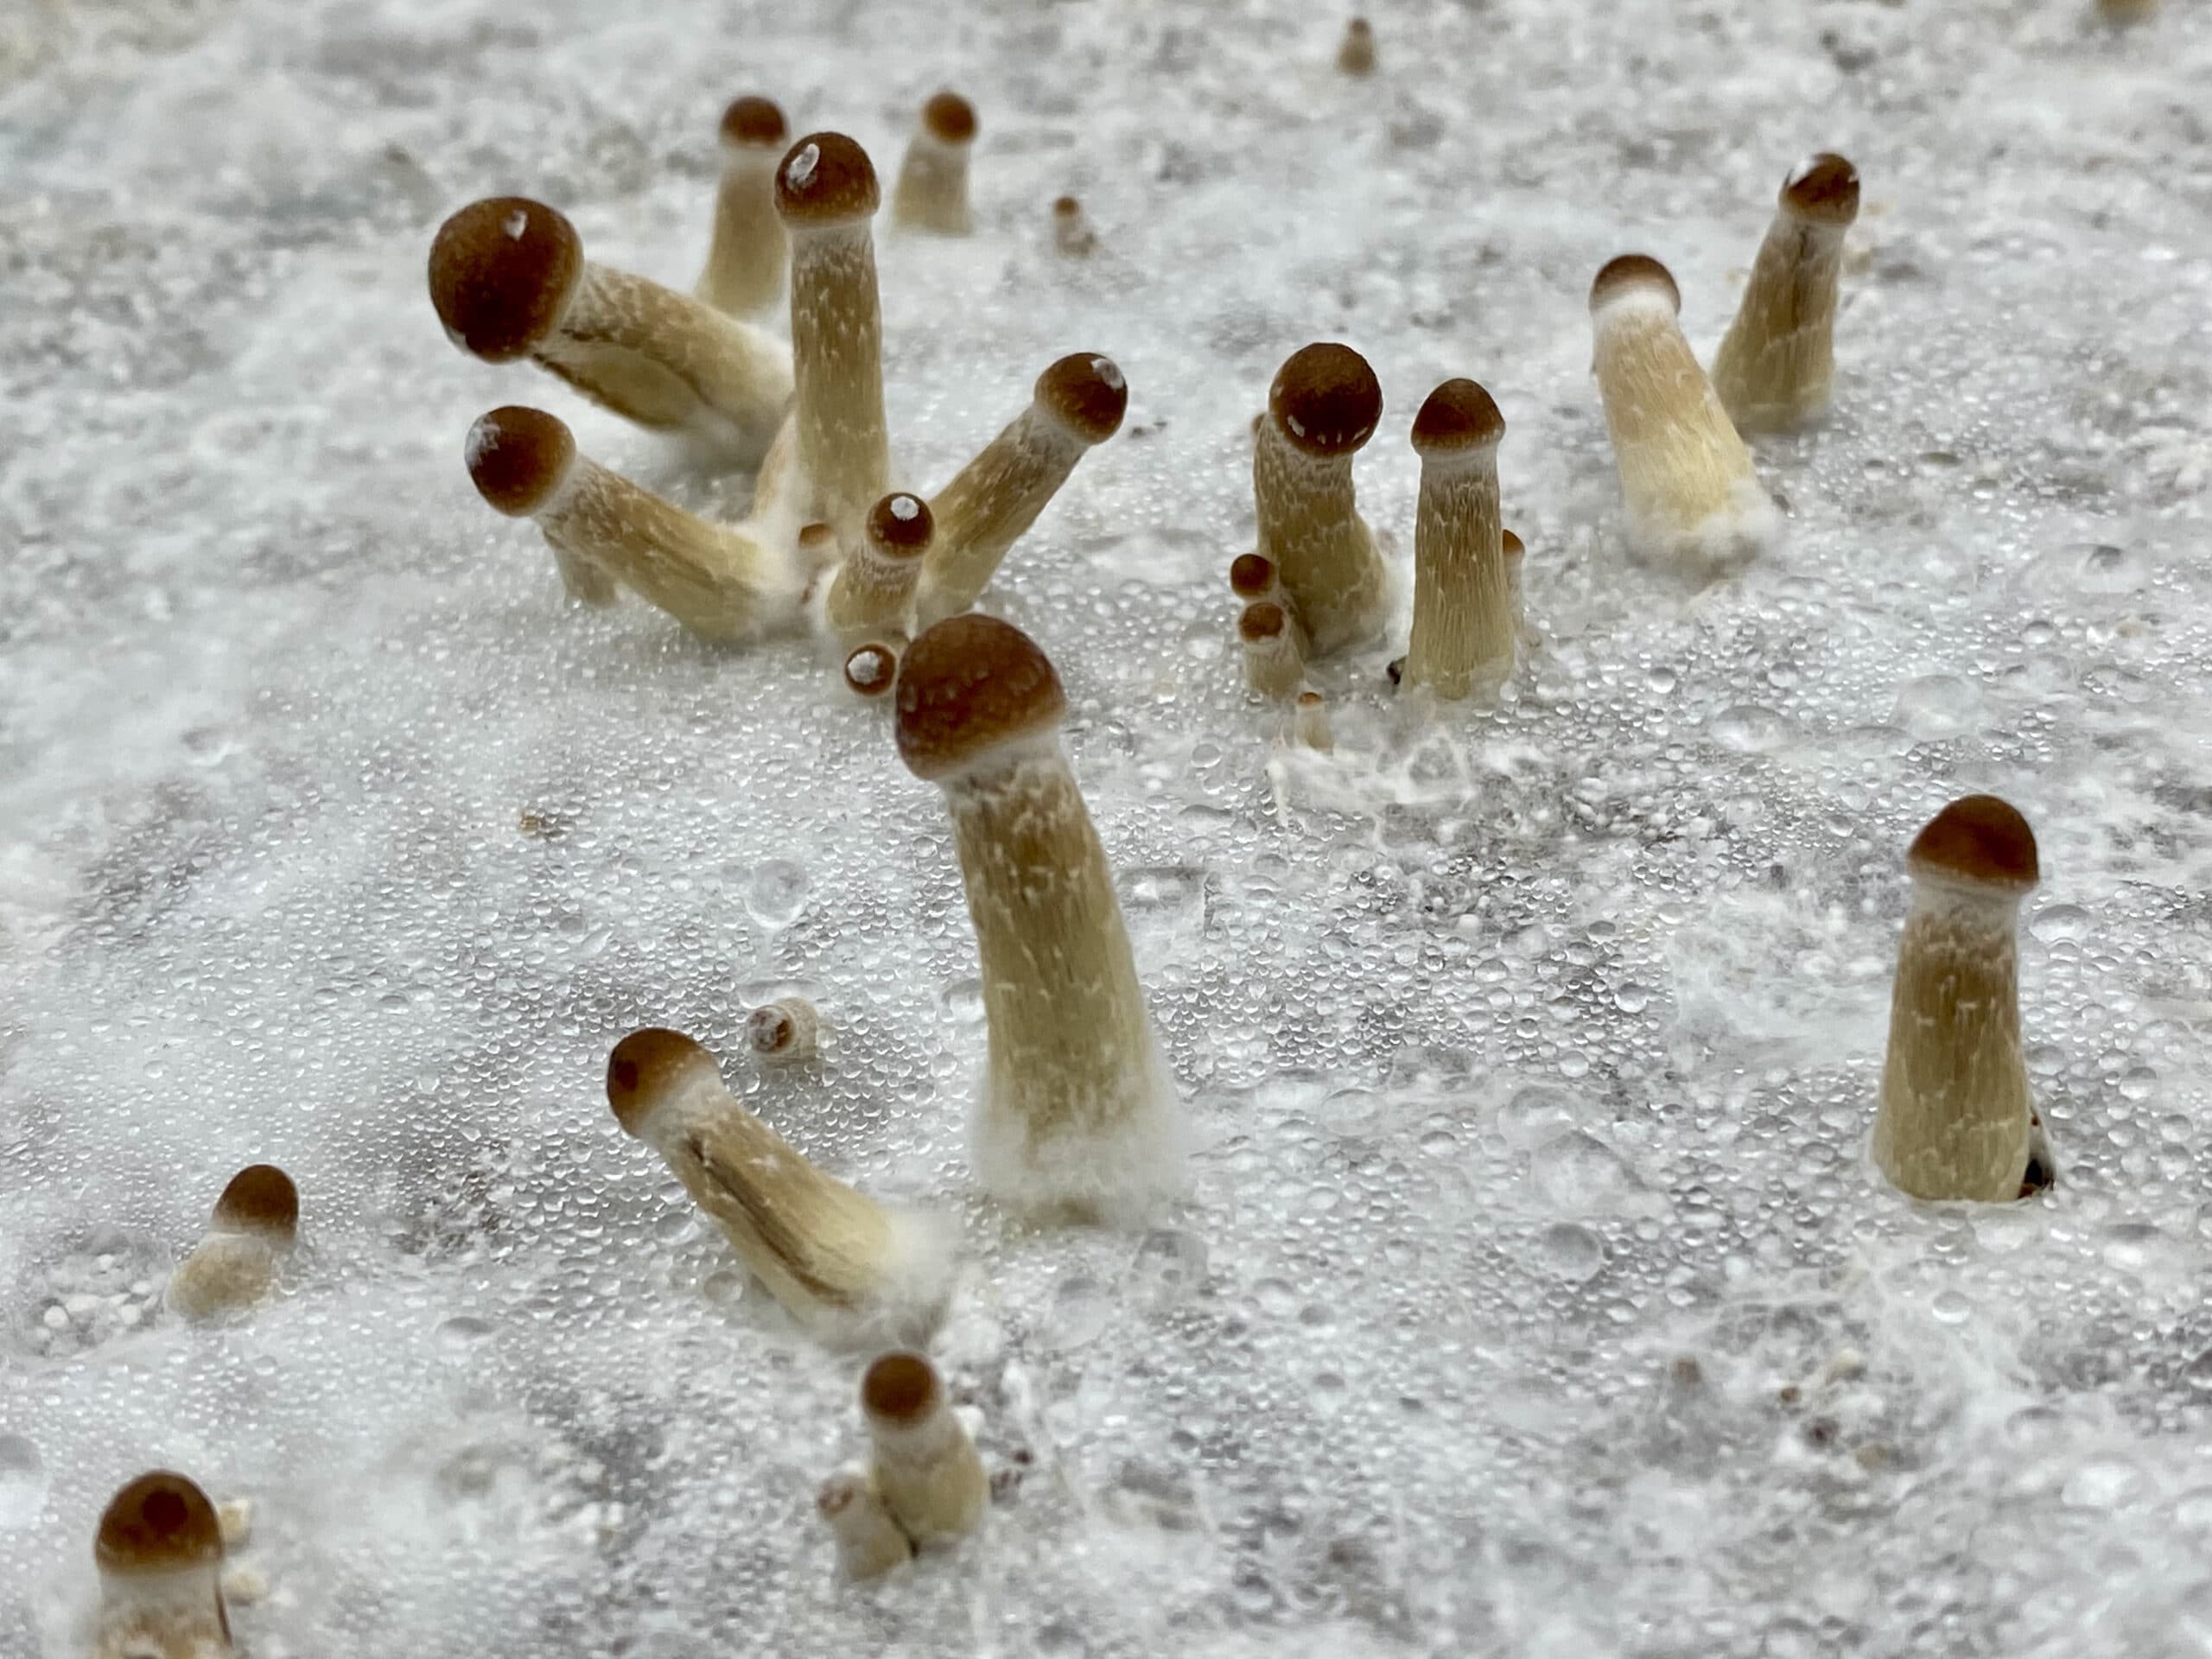 Growing mushroom pins